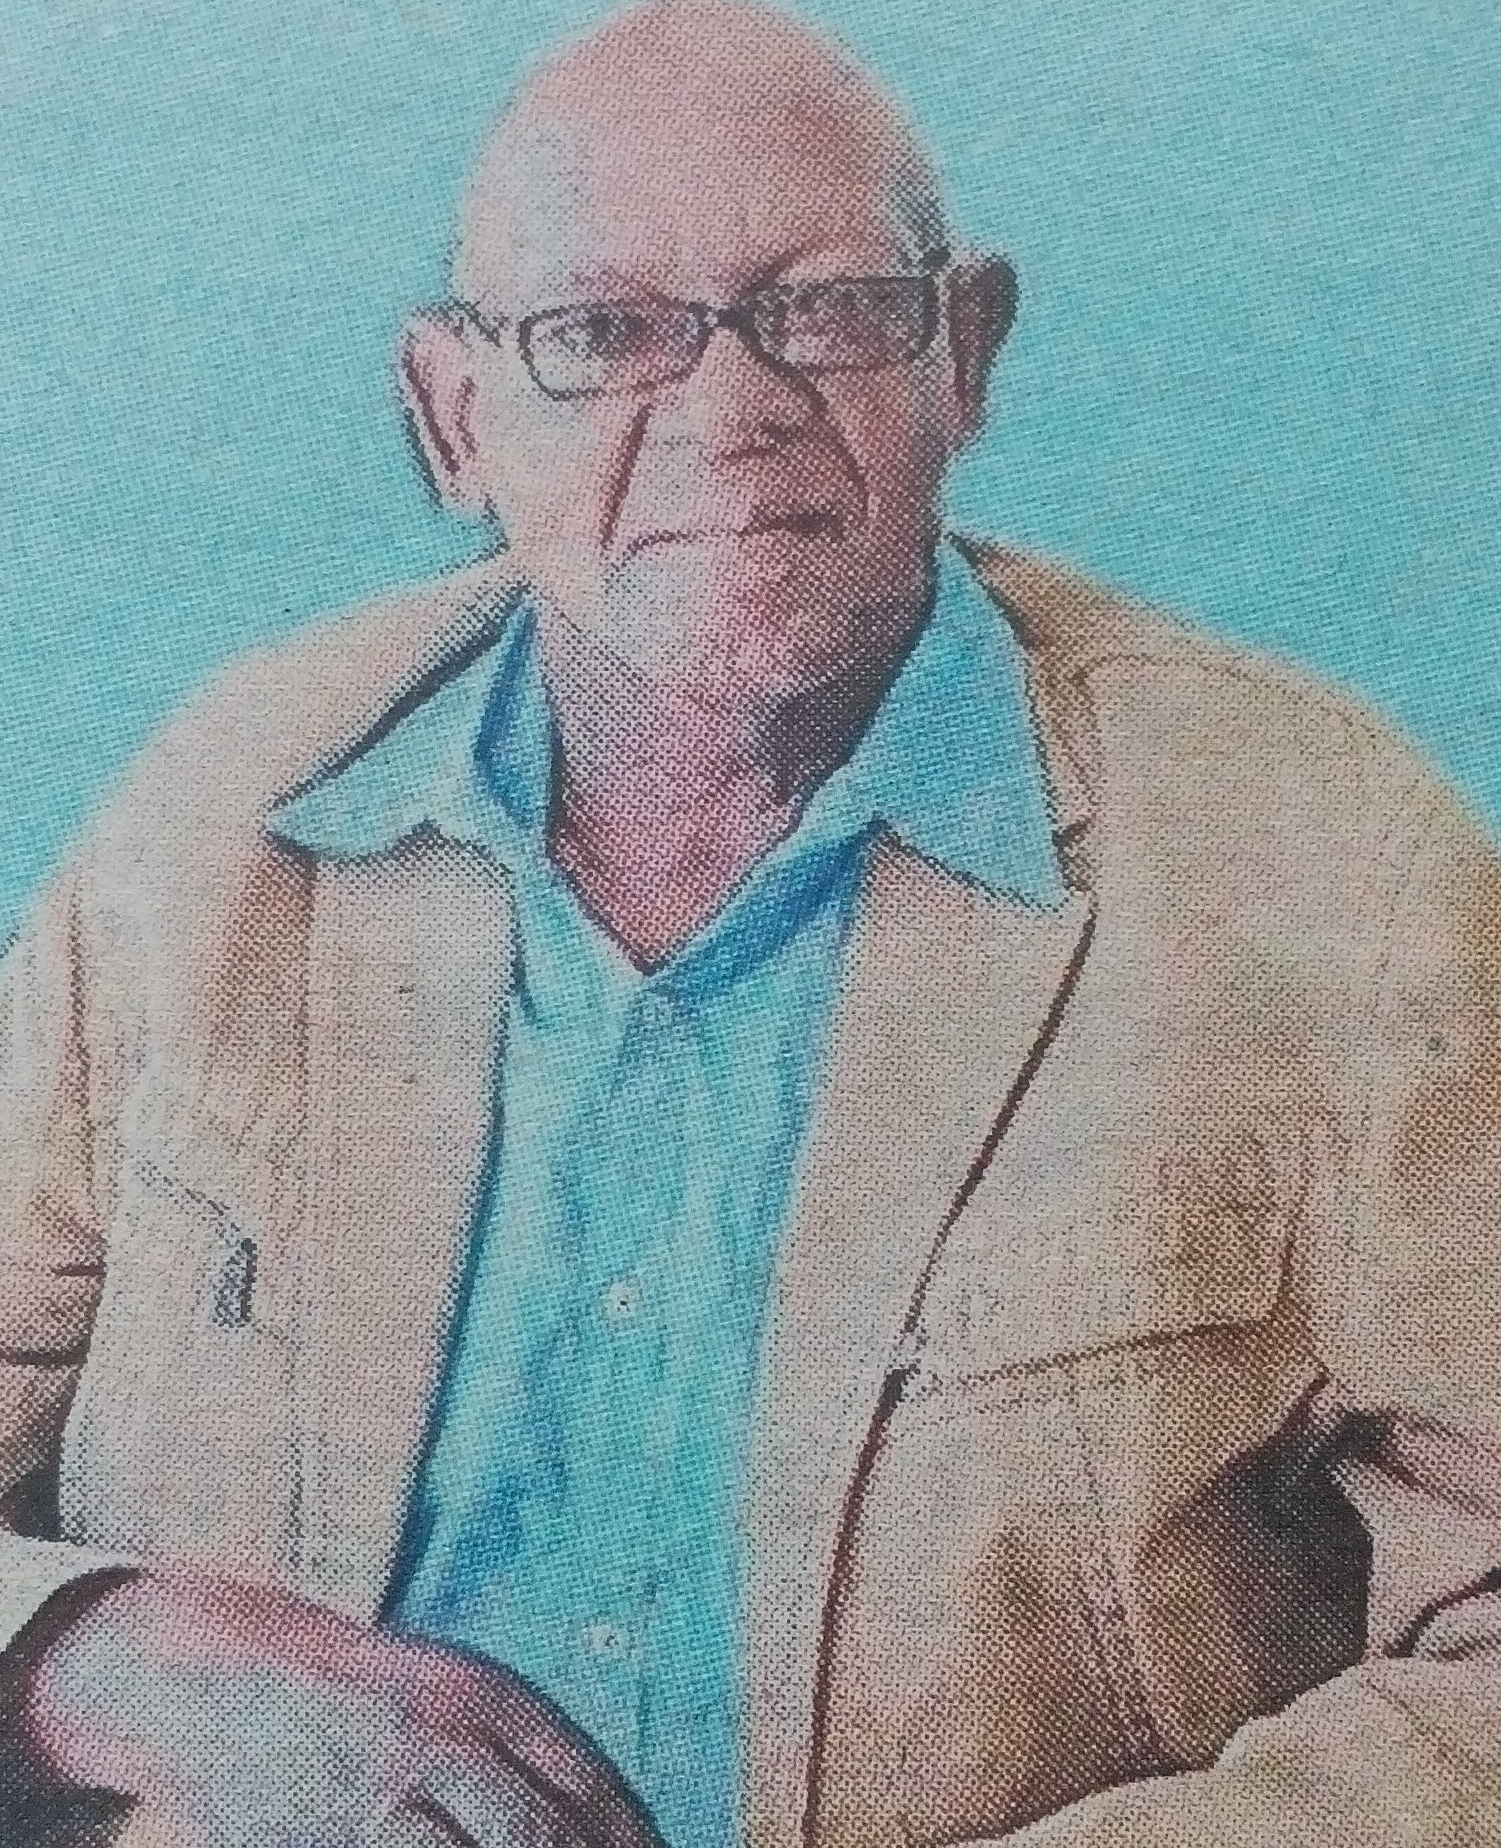 Obituary Image of Joseph Daniel Kinuthia